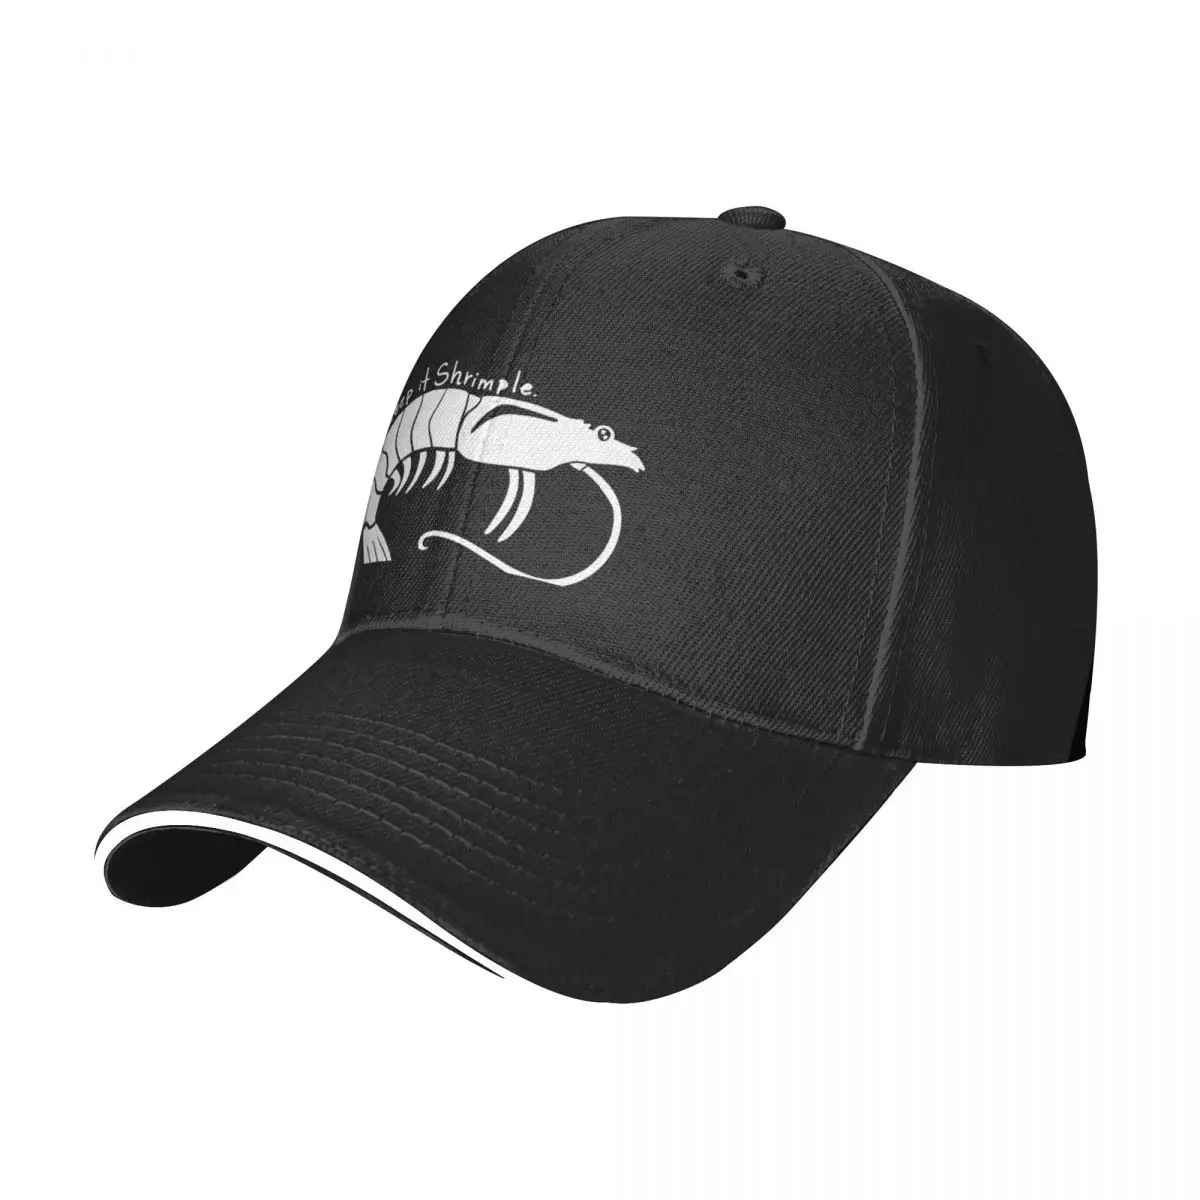 

New Keep it Shrimple Baseball Cap Streetwear Trucker Hats Hat For Men Women'S